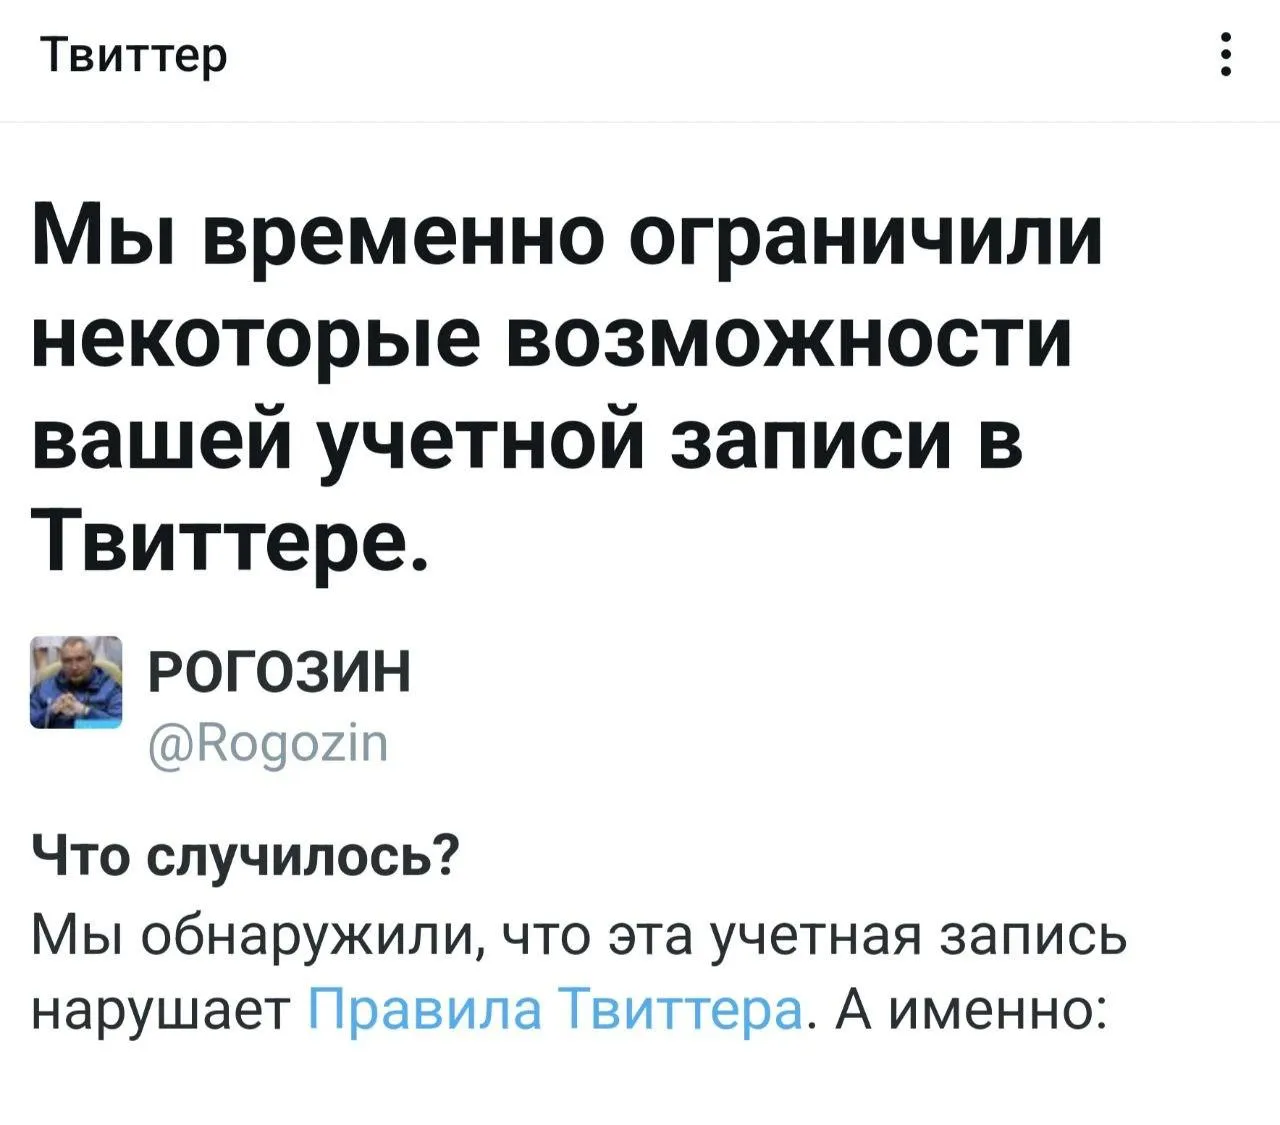 Сообщение, которое получил Рогозин